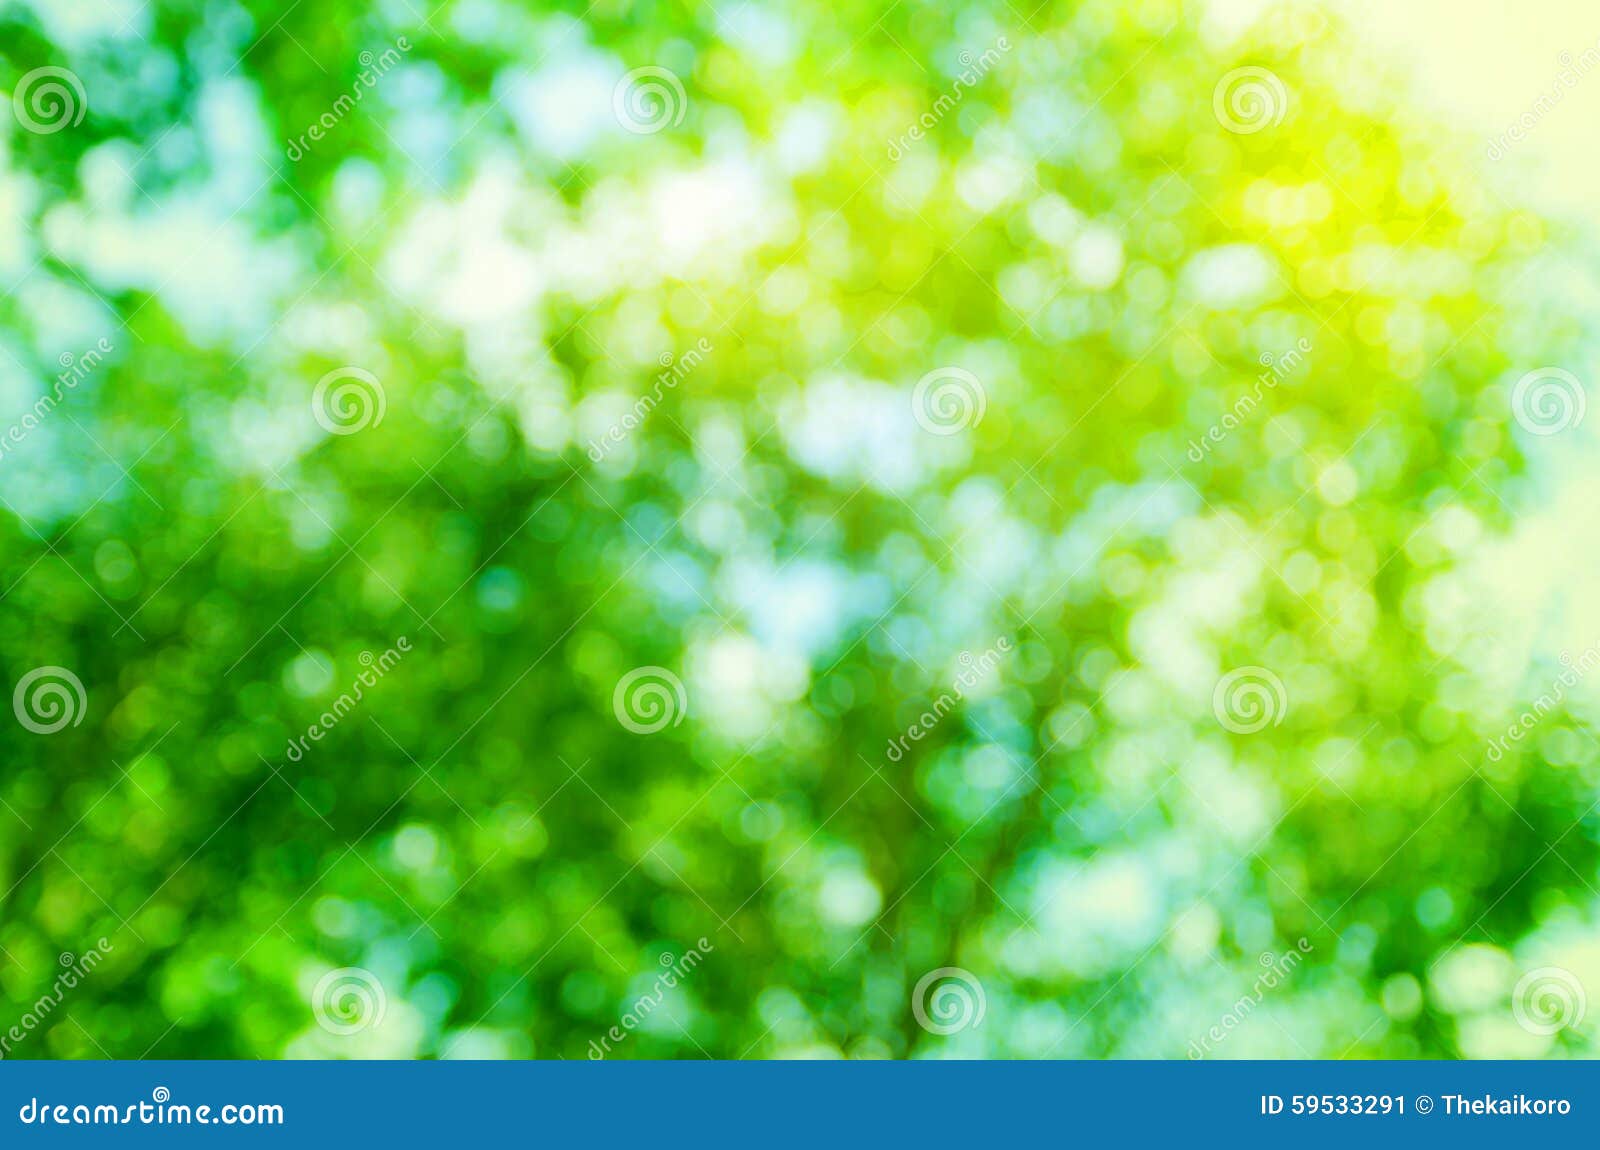 Cây xanh tươi mát ngay trước mắt bạn sẽ khiến bạn cảm nhận được sự bình yên và thoải mái. Hãy chiêm ngưỡng bức ảnh với cây xanh làm chủ đề và cùng thư giãn với thiên nhiên nhé.